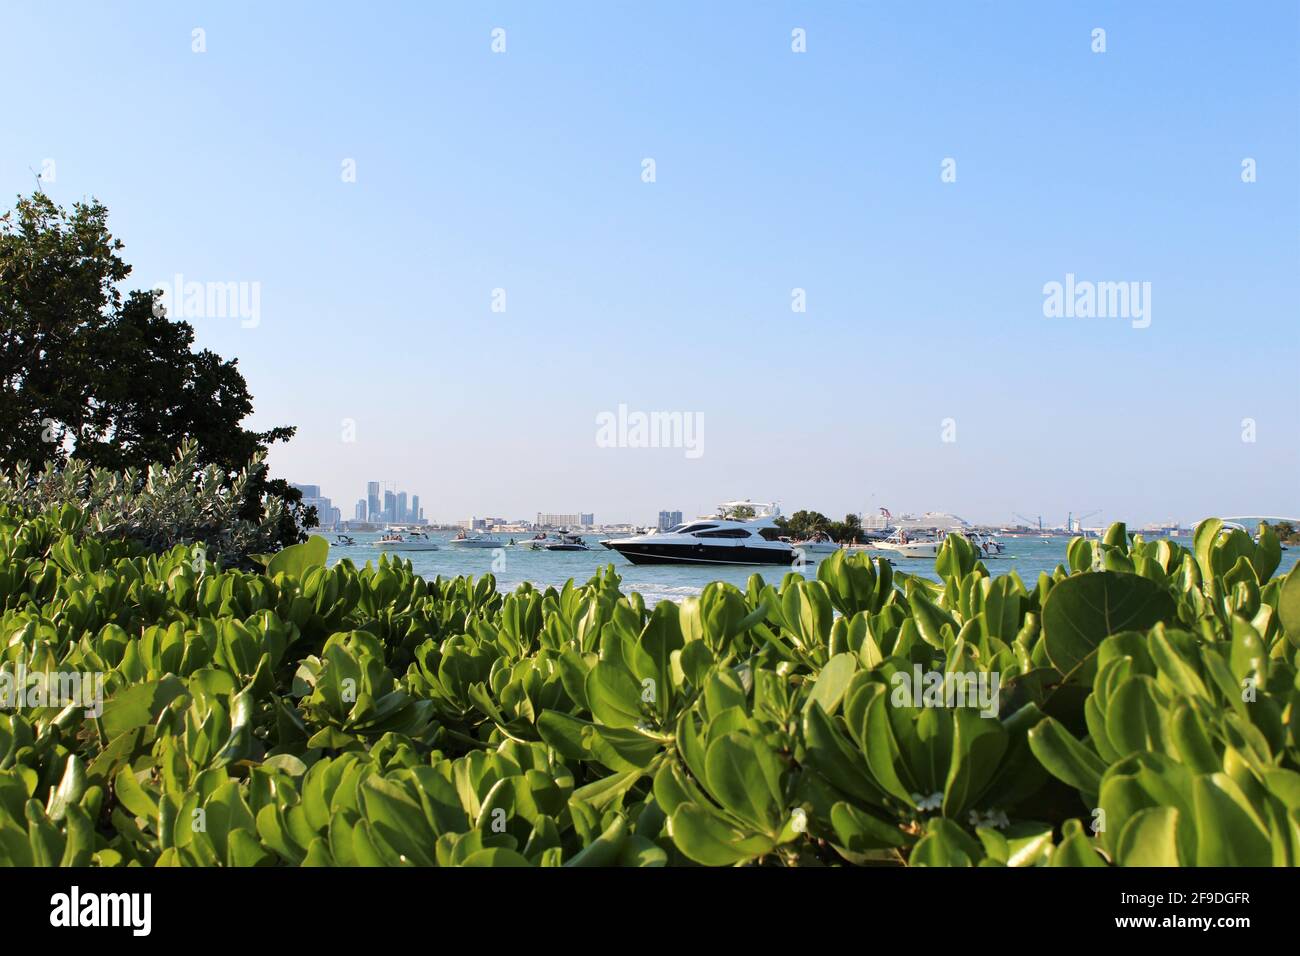 Miami Beach fond de paysage urbain avec un grand yacht. Naupaka de plage ou plante de chou de plage en premier plan. Banque D'Images